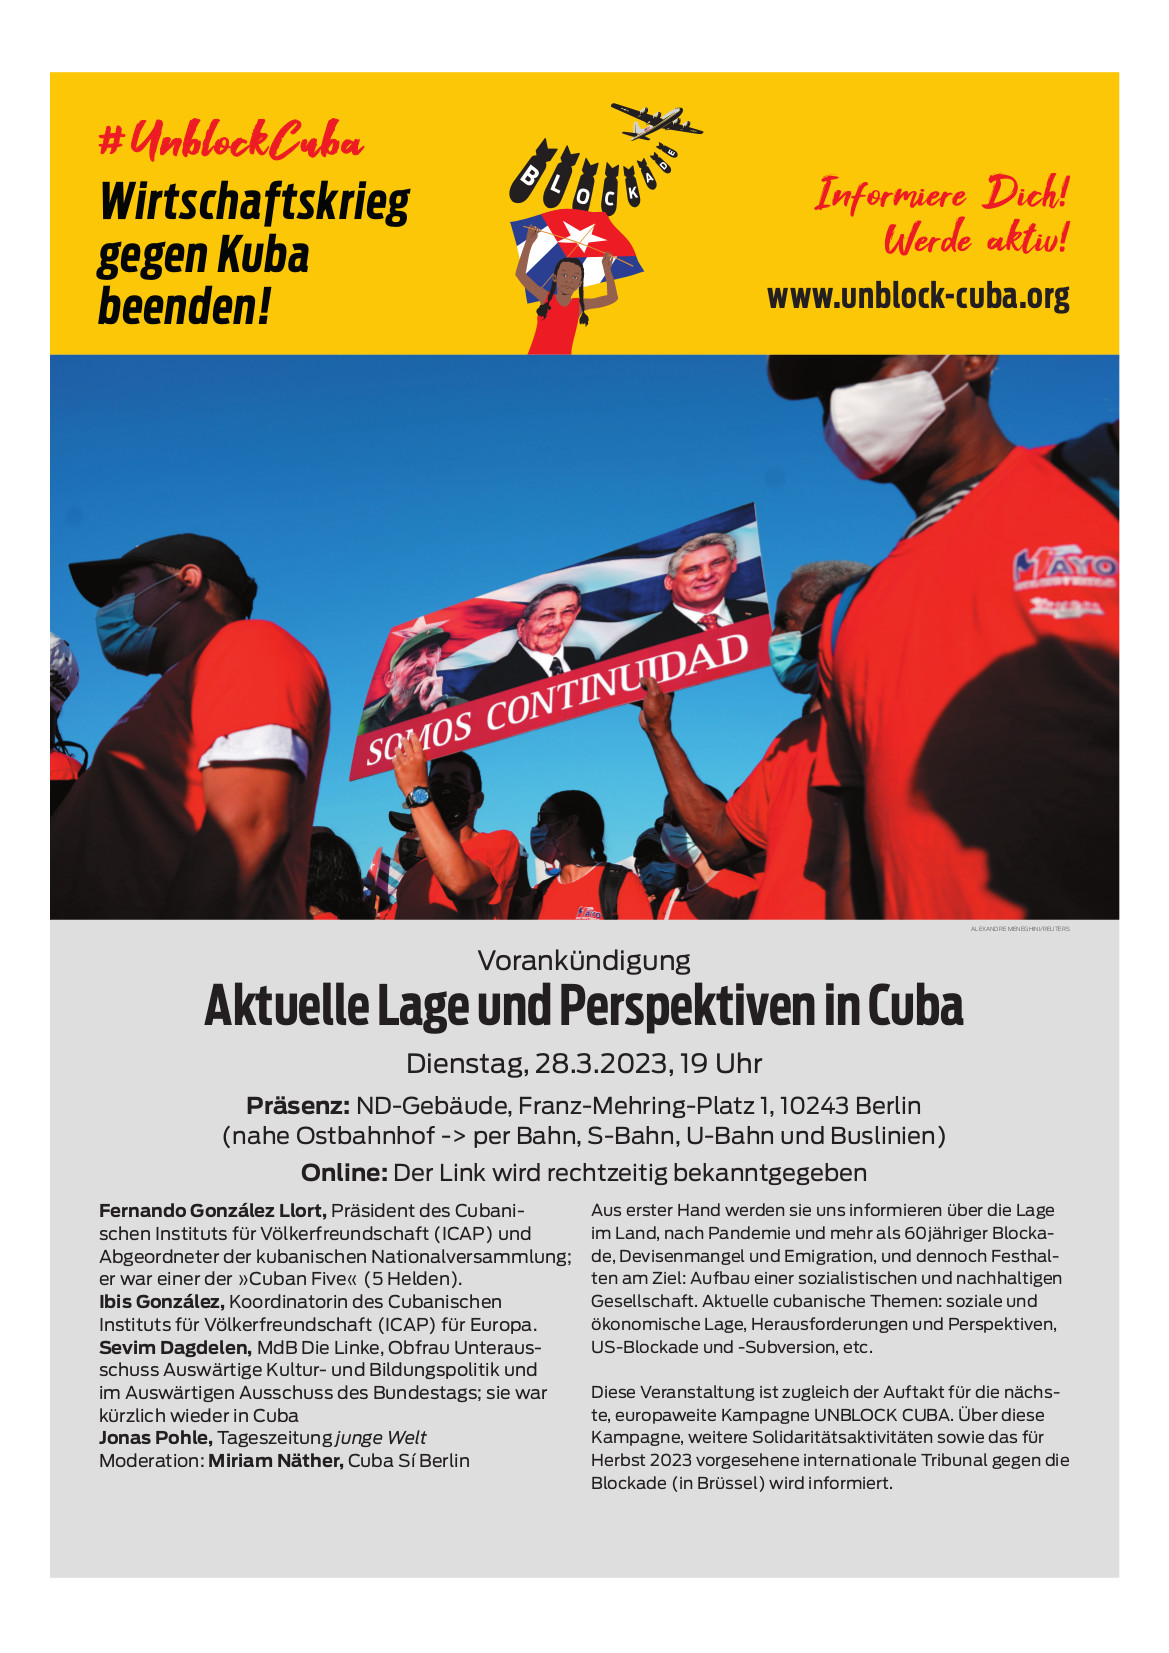 Aktuelle Lage und Perspektiven in Cuba